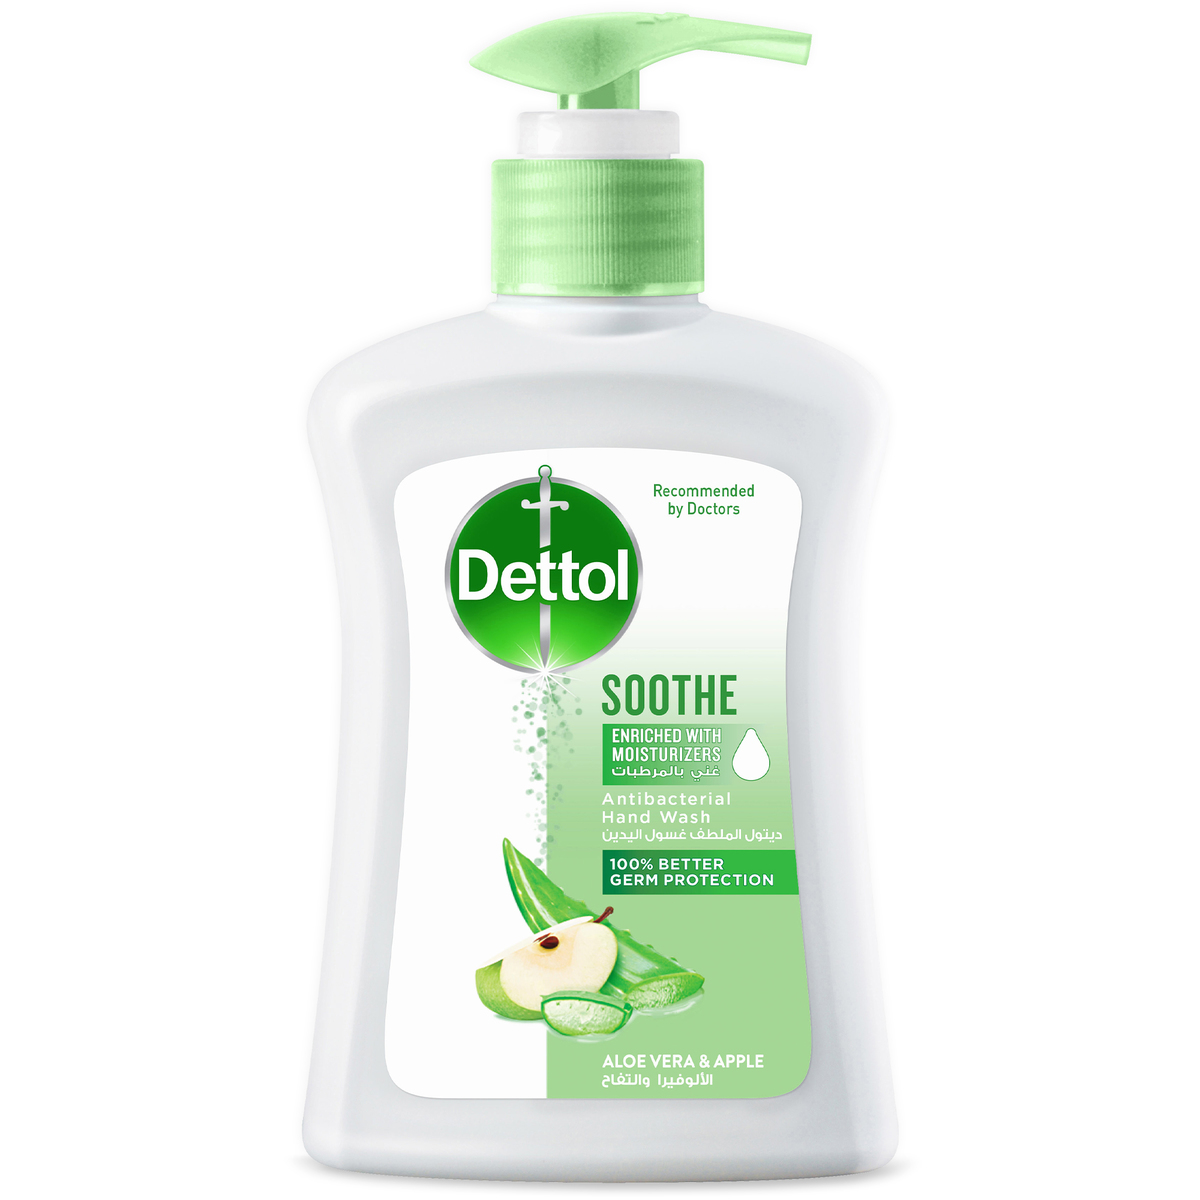 Buy Dettol Soothe Antibacterial Liquid Hand Wash 200ml.